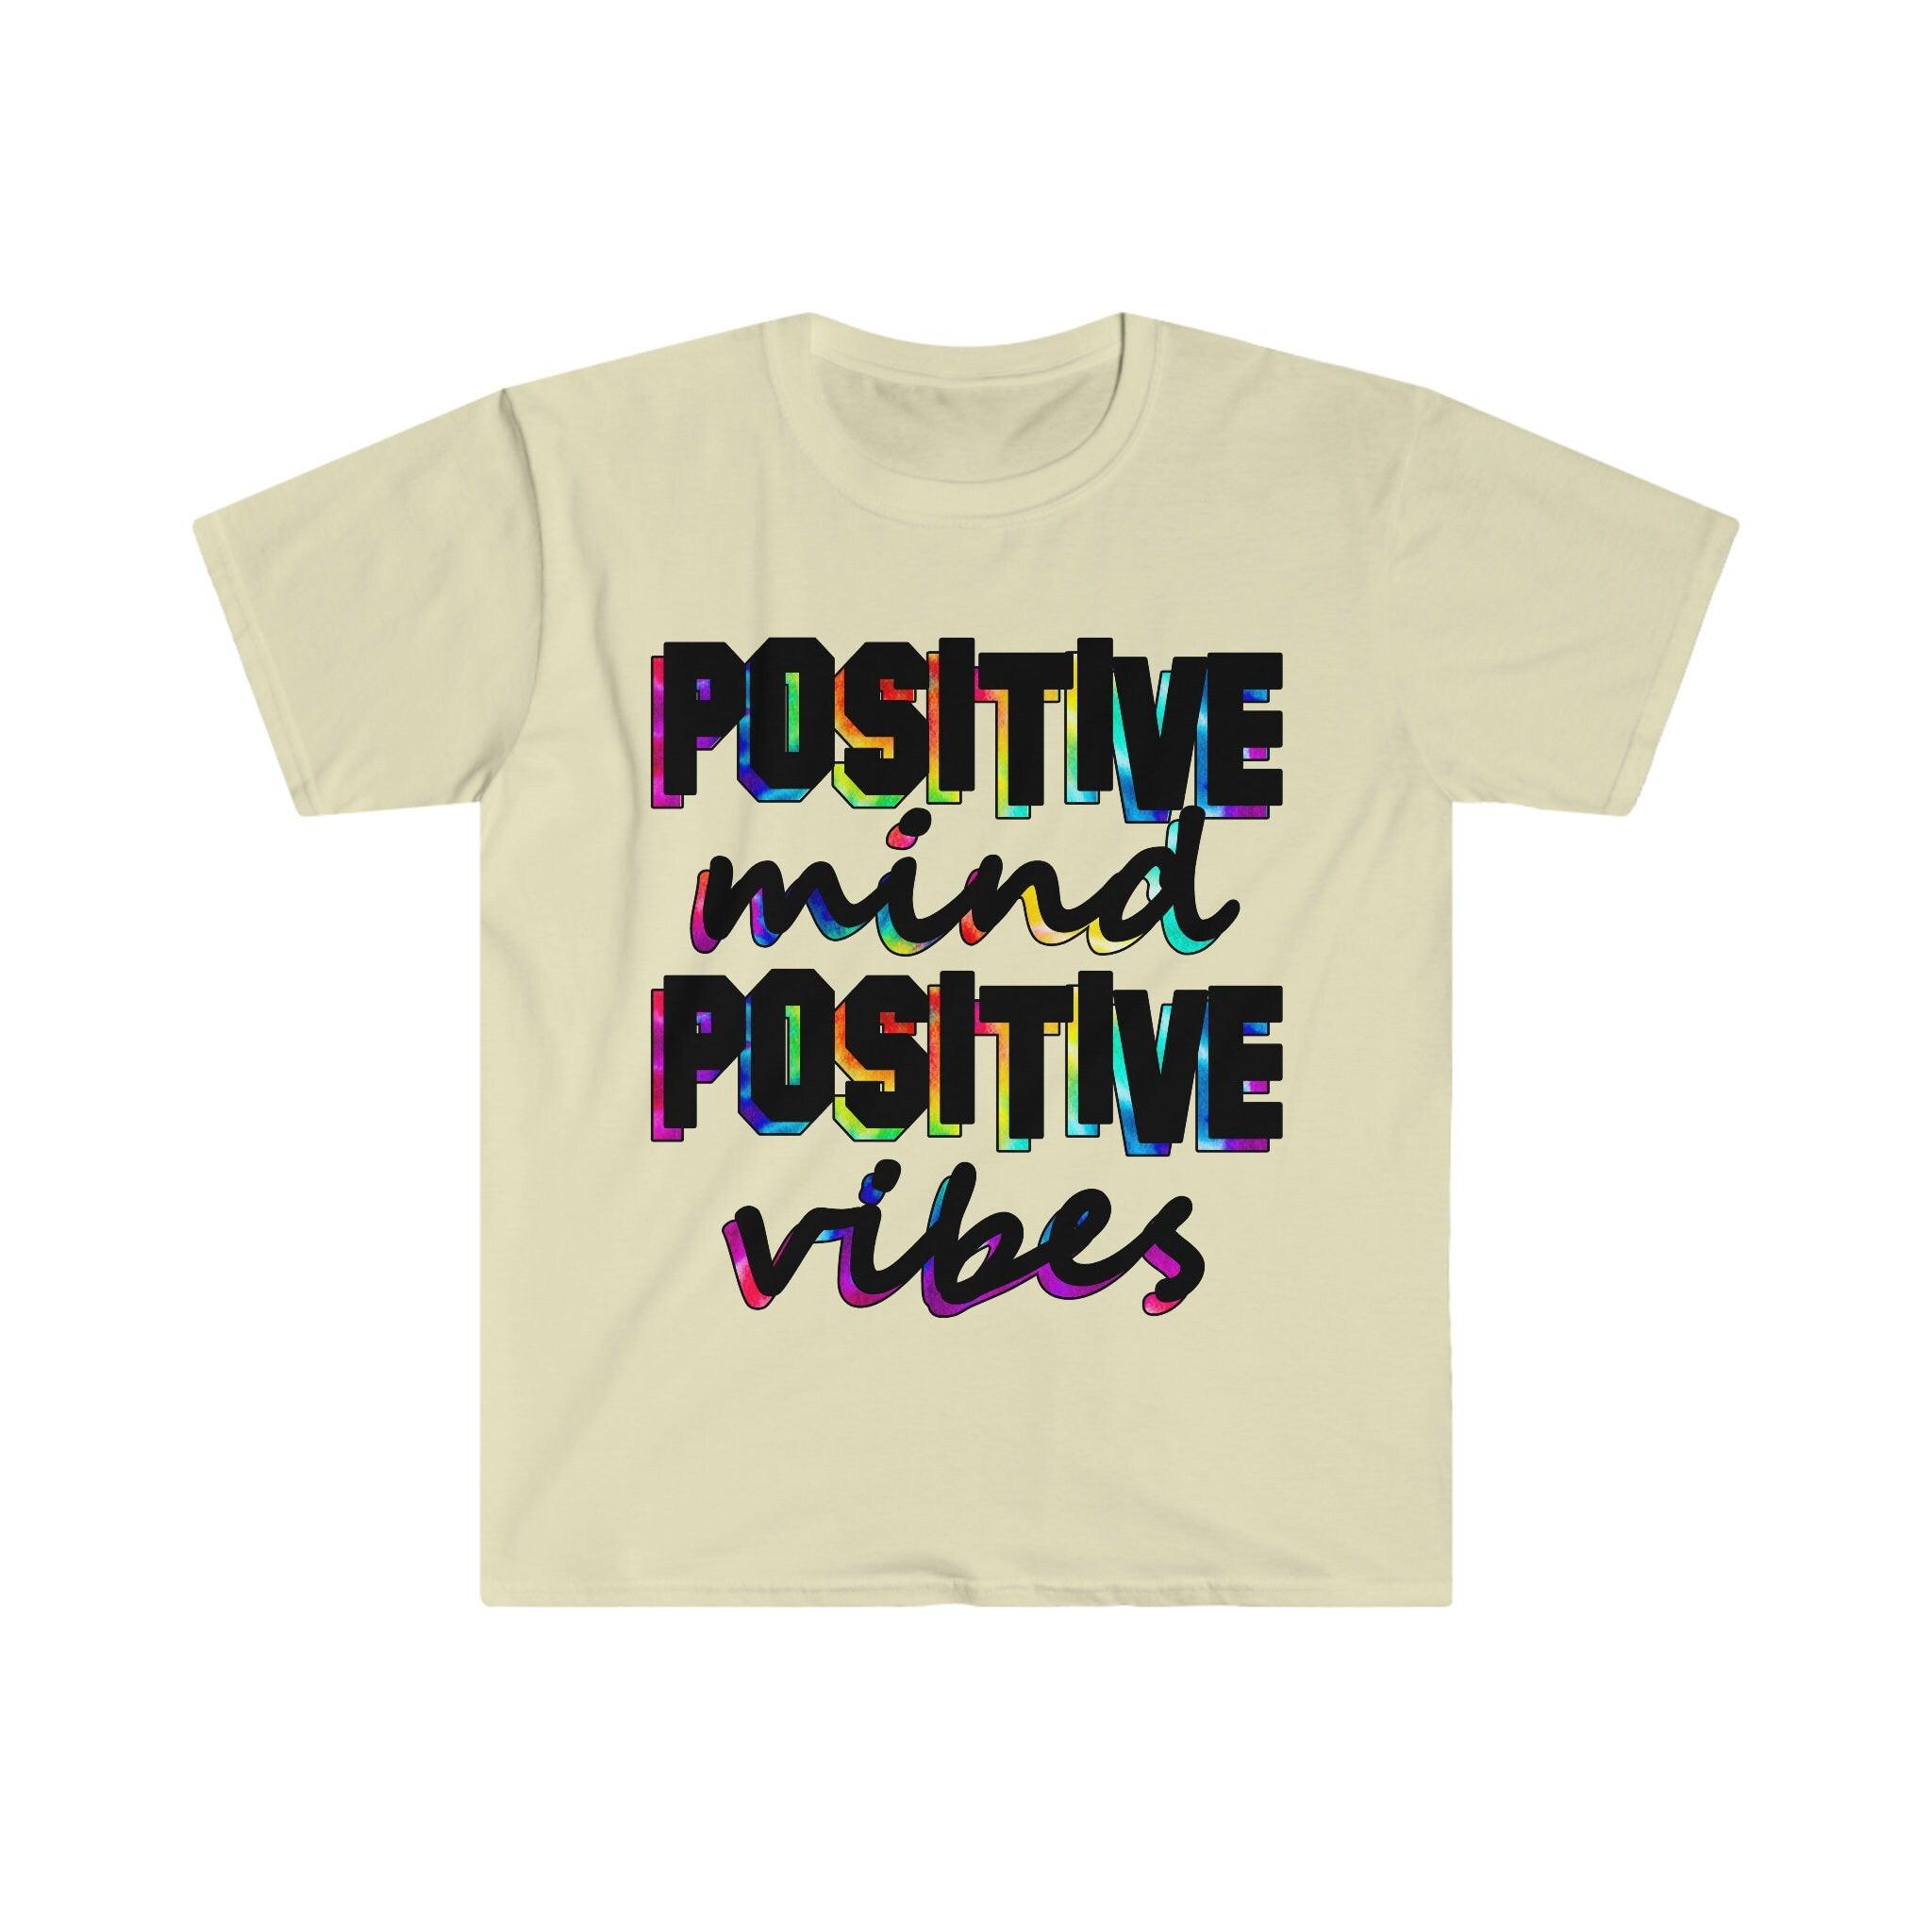 ポジティブマインドポジティブバイブス T シャツ、モチベーションを高めるシャツ、インスピレーションを与えるシャツ、ポジティブ T シャツ - plusminusco.com